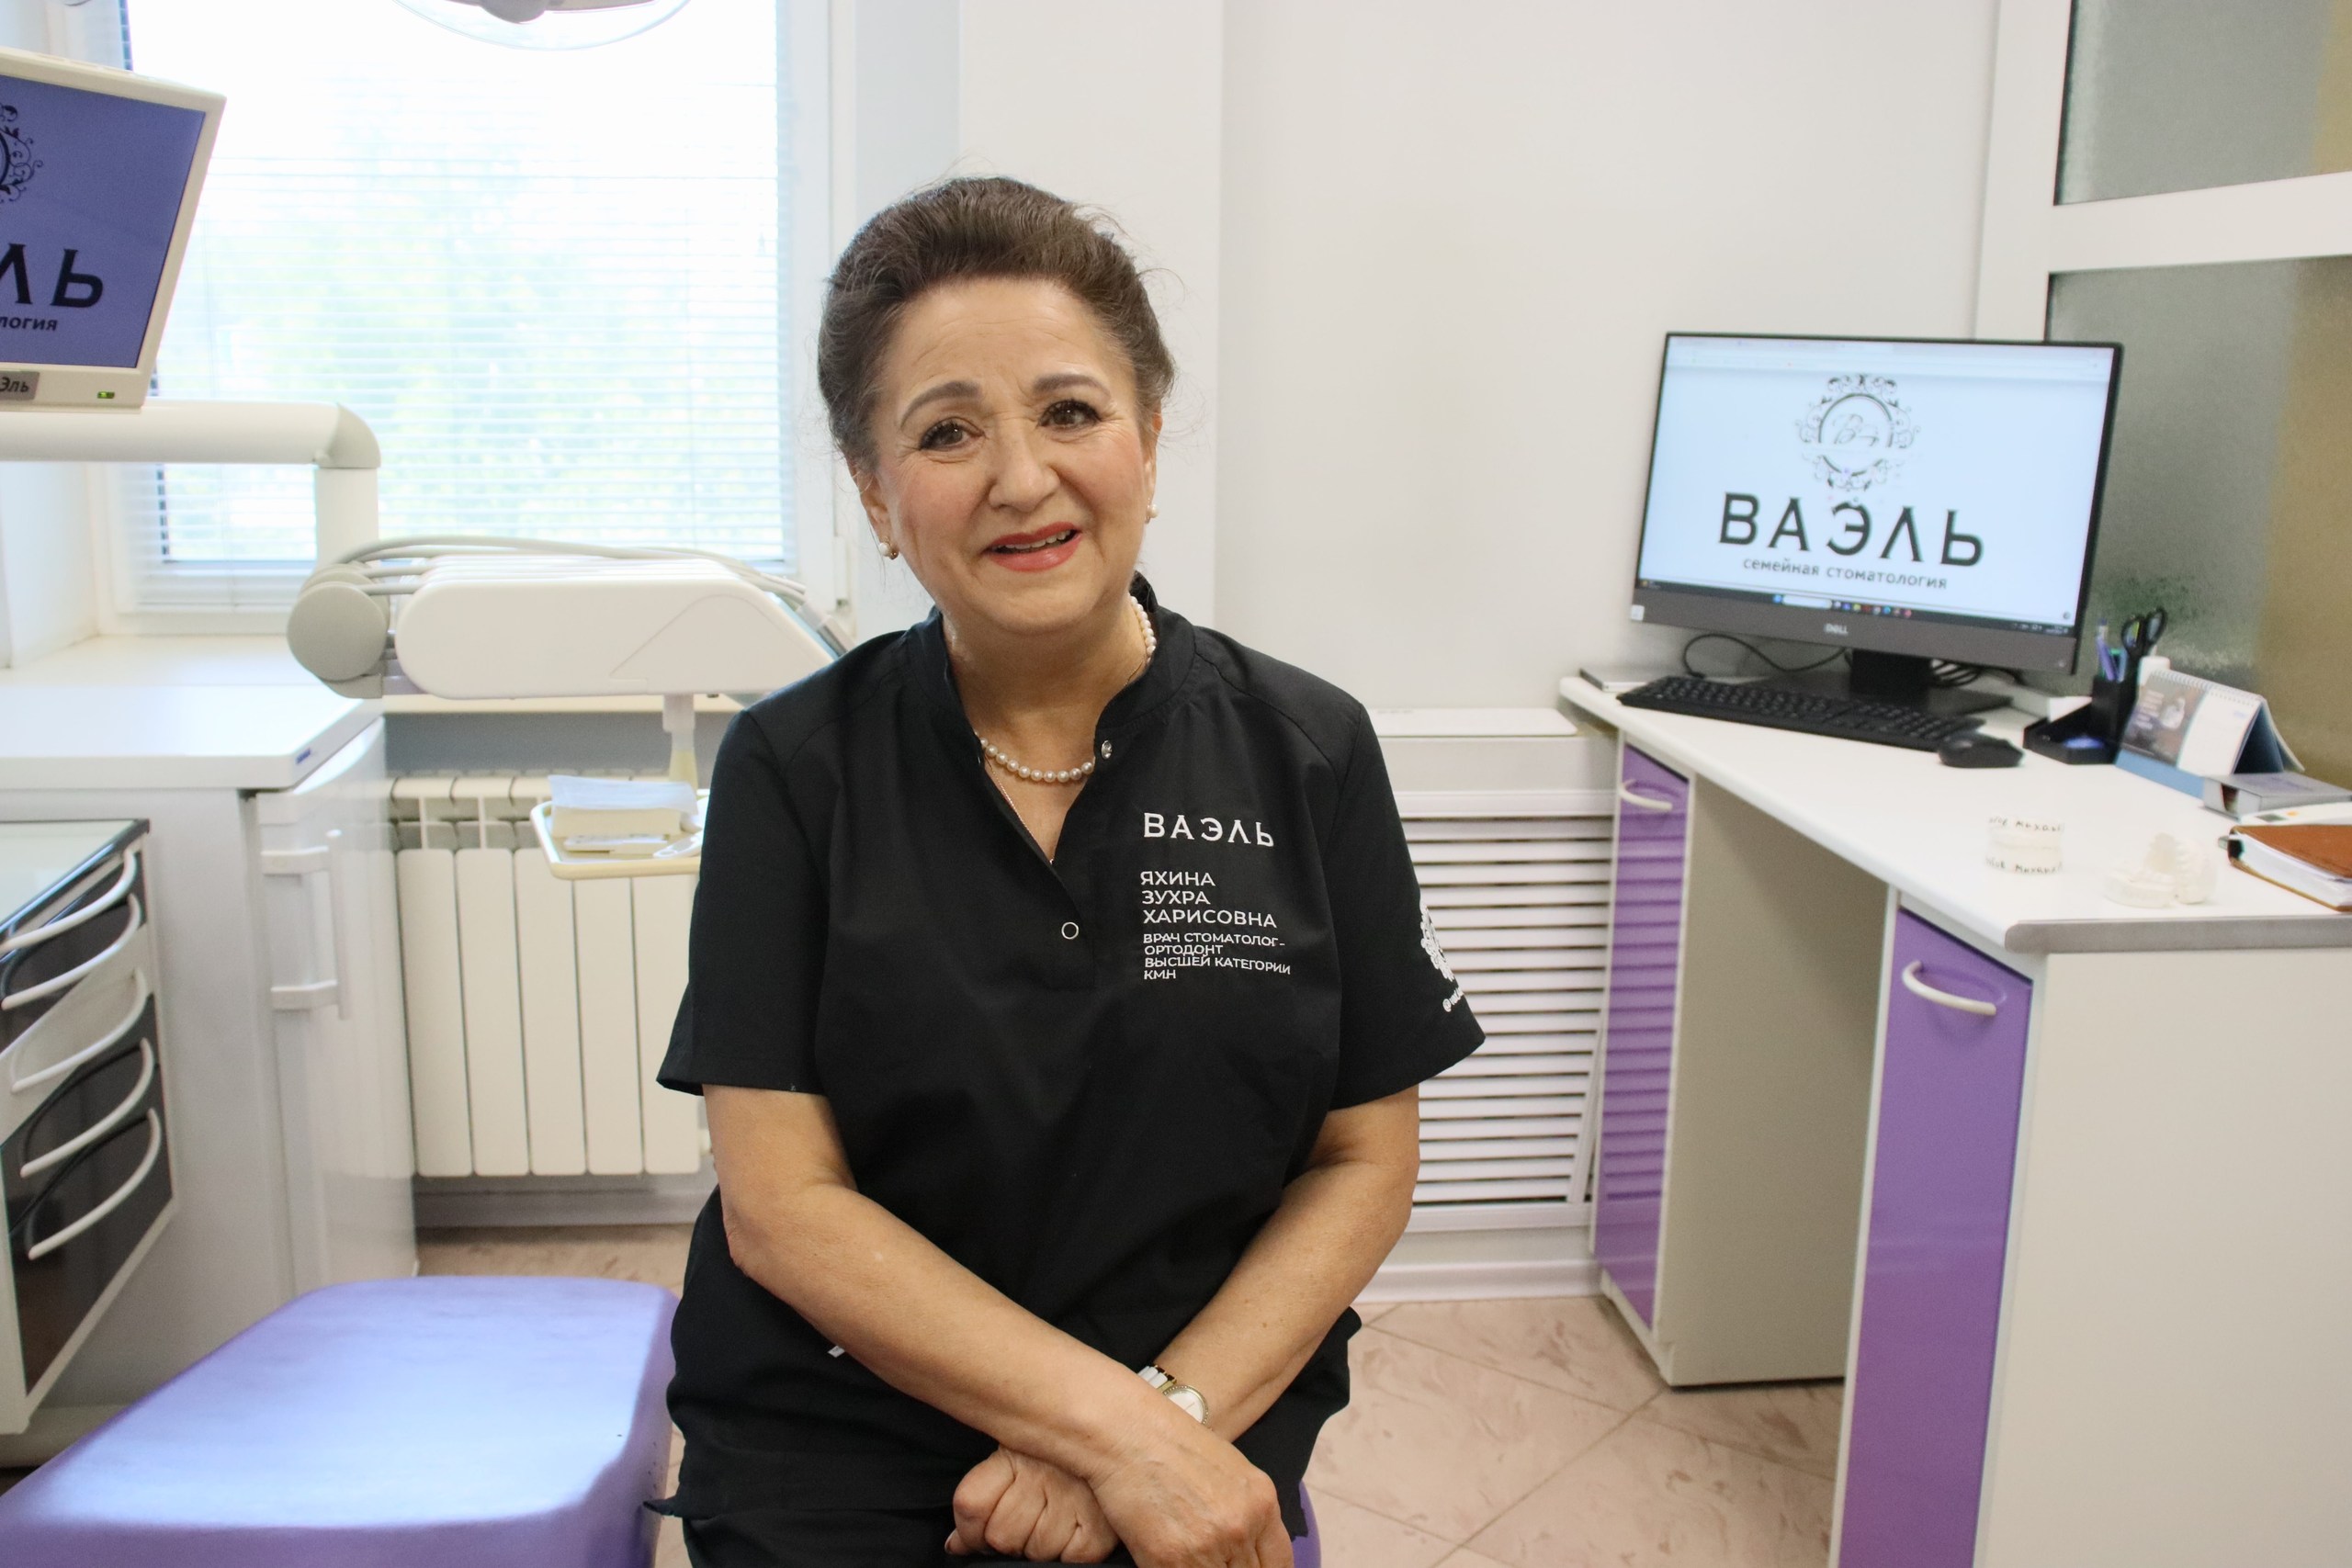  Стоматолог, которая вылечила три поколения казанцев: удивительная история Зухры Харисовны Яхиной  